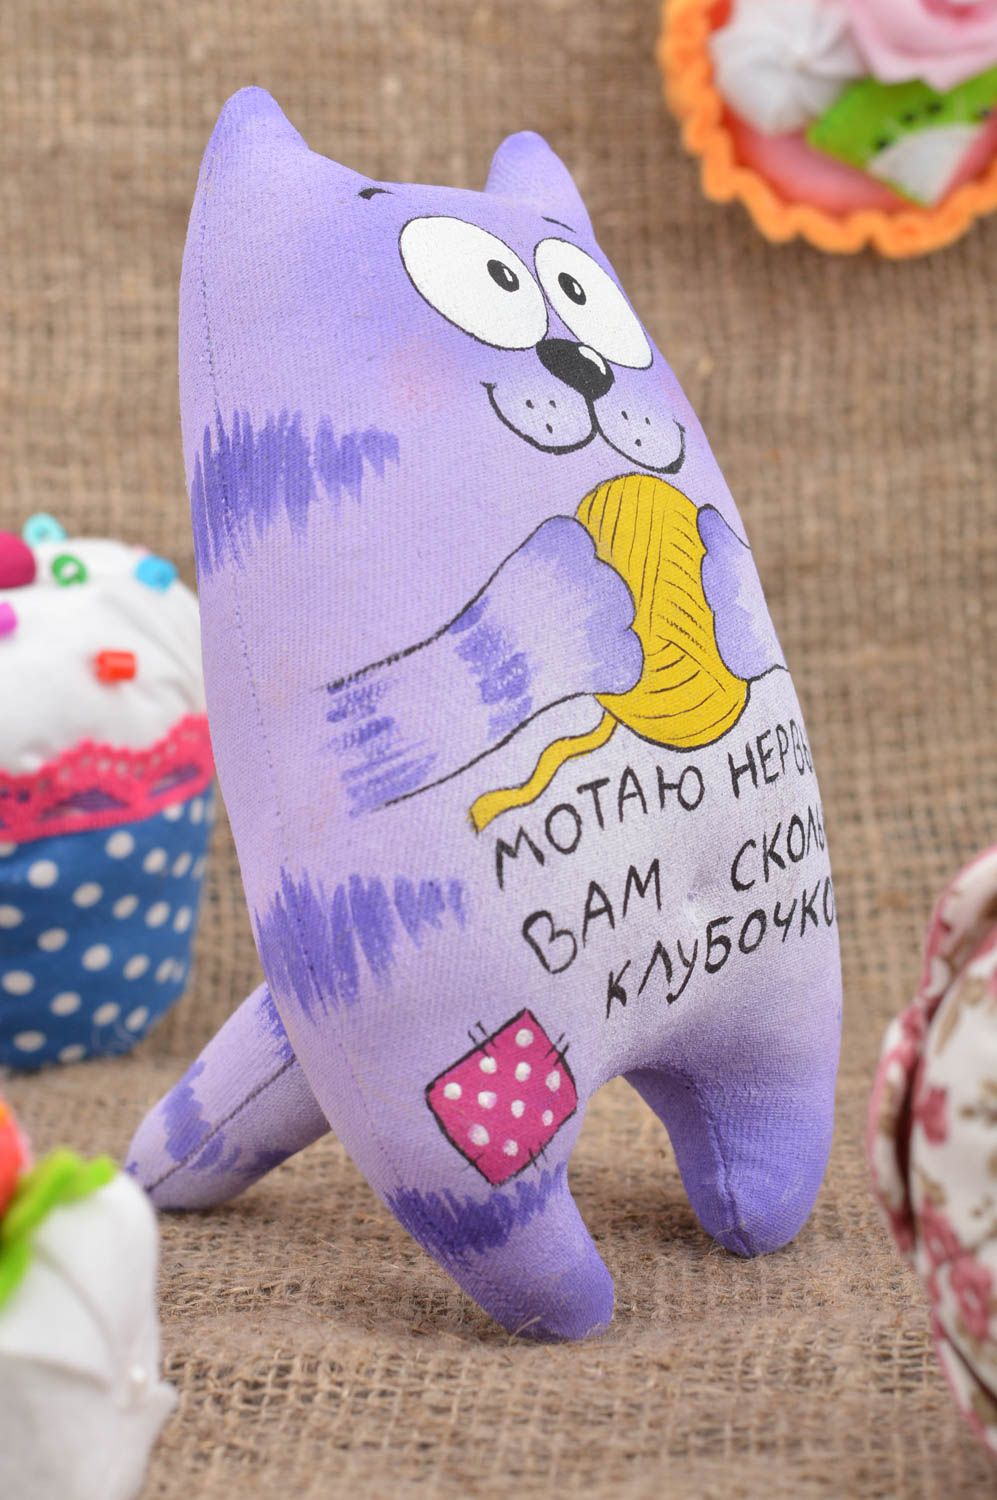 Мягкая игрушка ручной работы котик из хлопка с надписью декоративная красивая фото 1